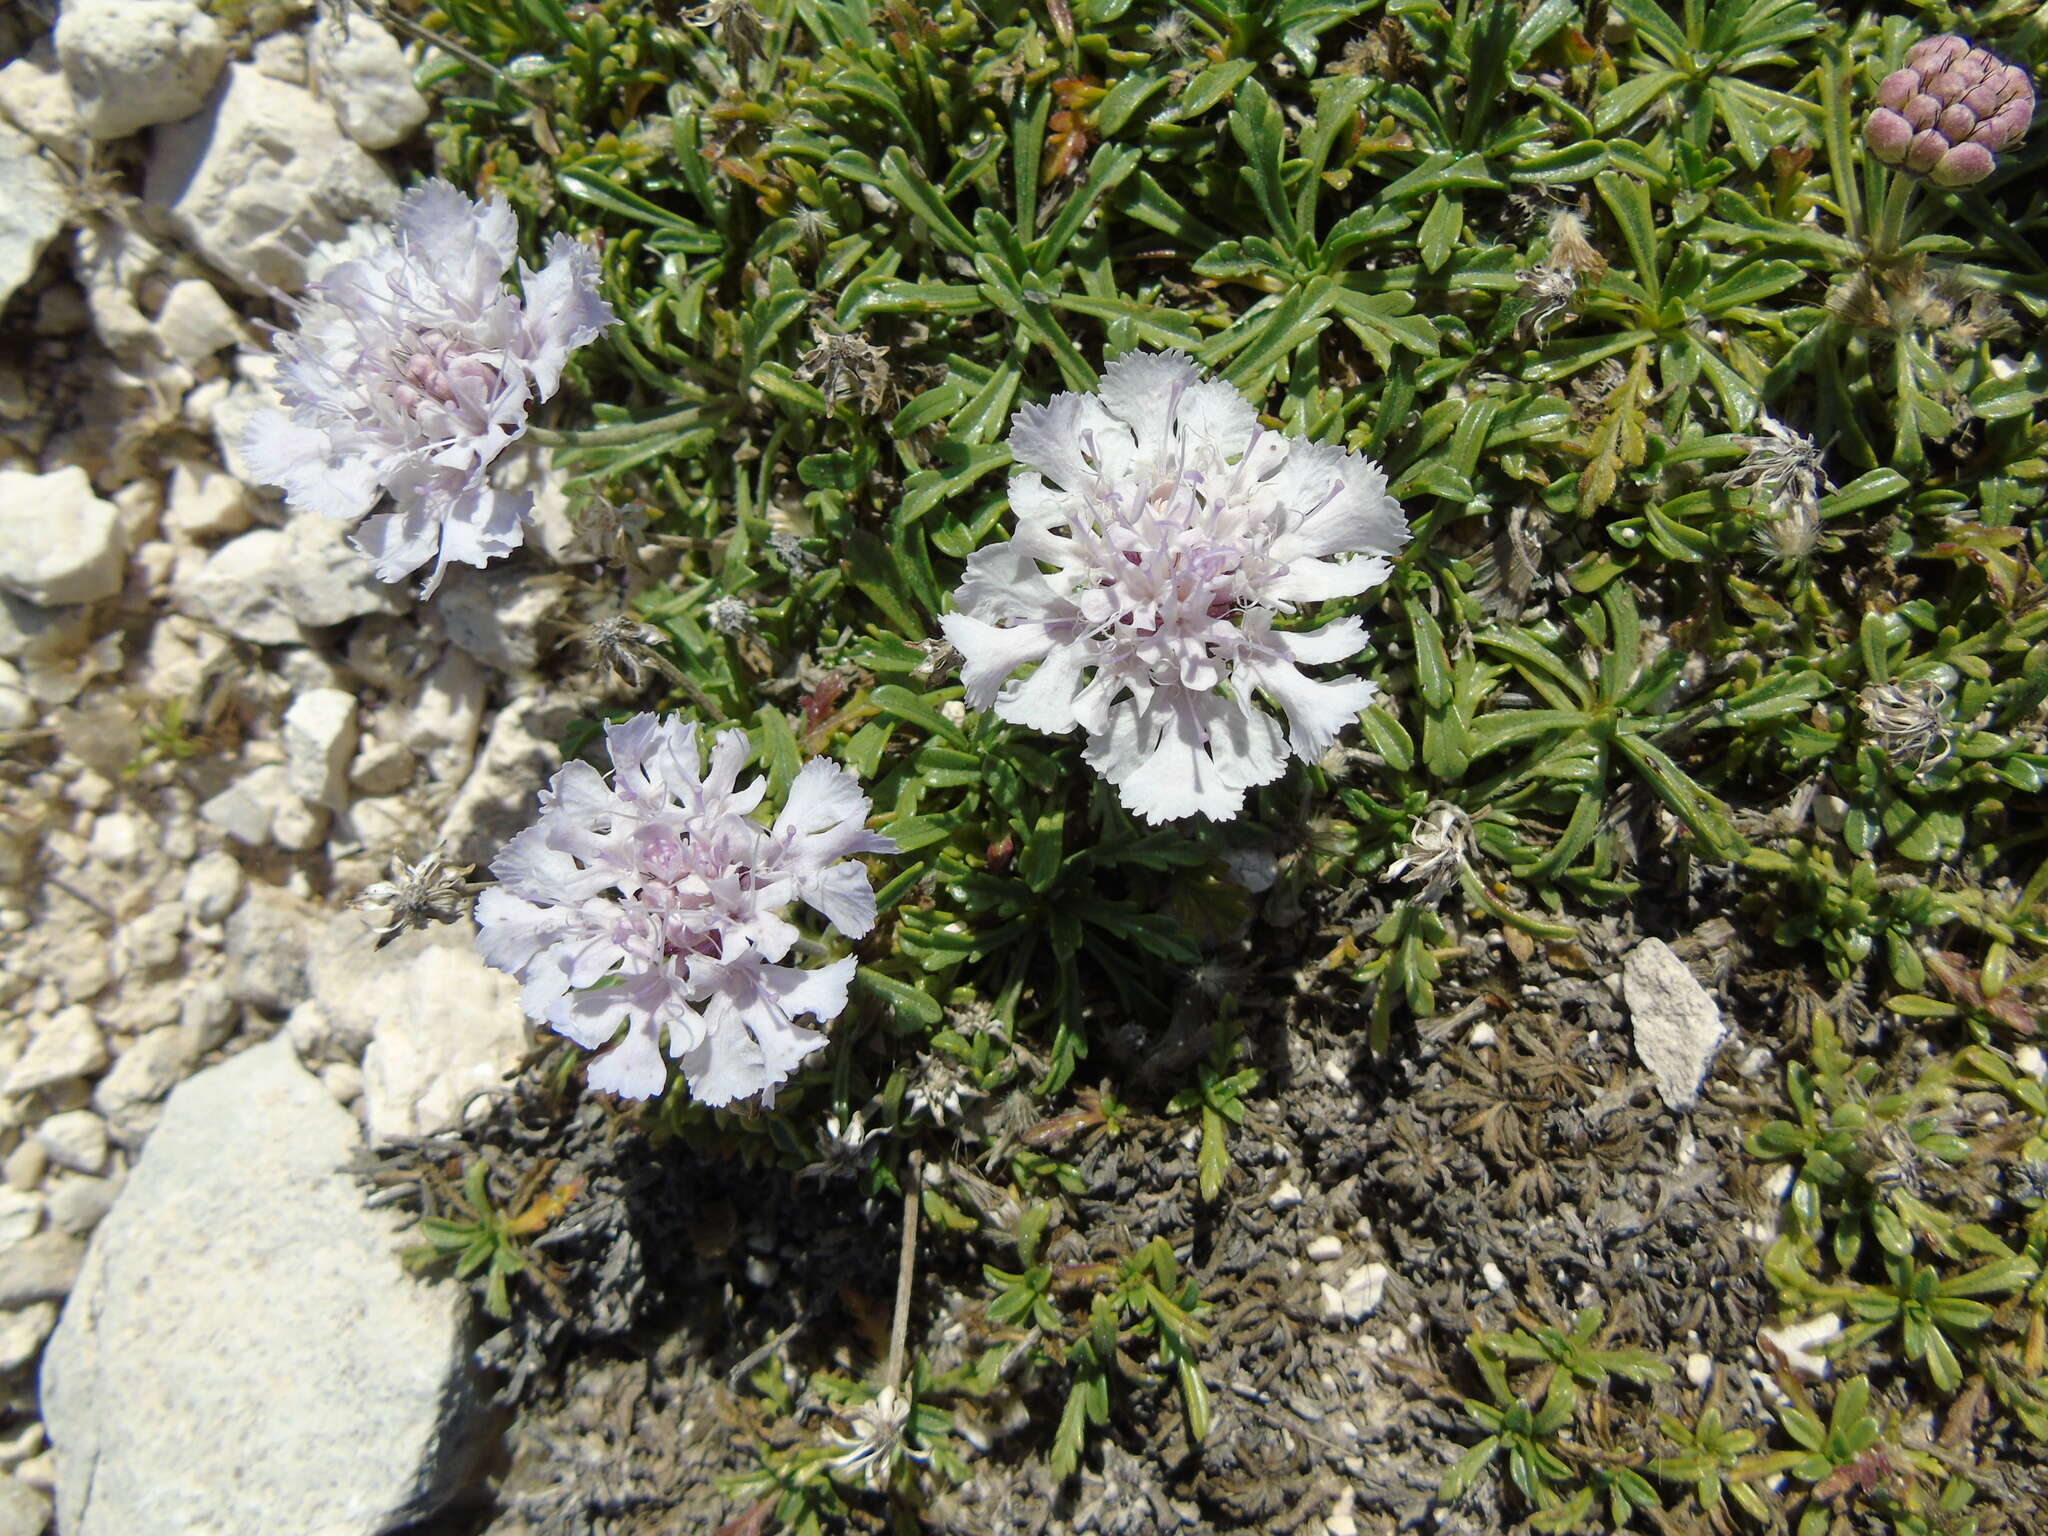 Image de Lomelosia crenata subsp. dallaportae (Boiss.) W. Greuter & Burdet